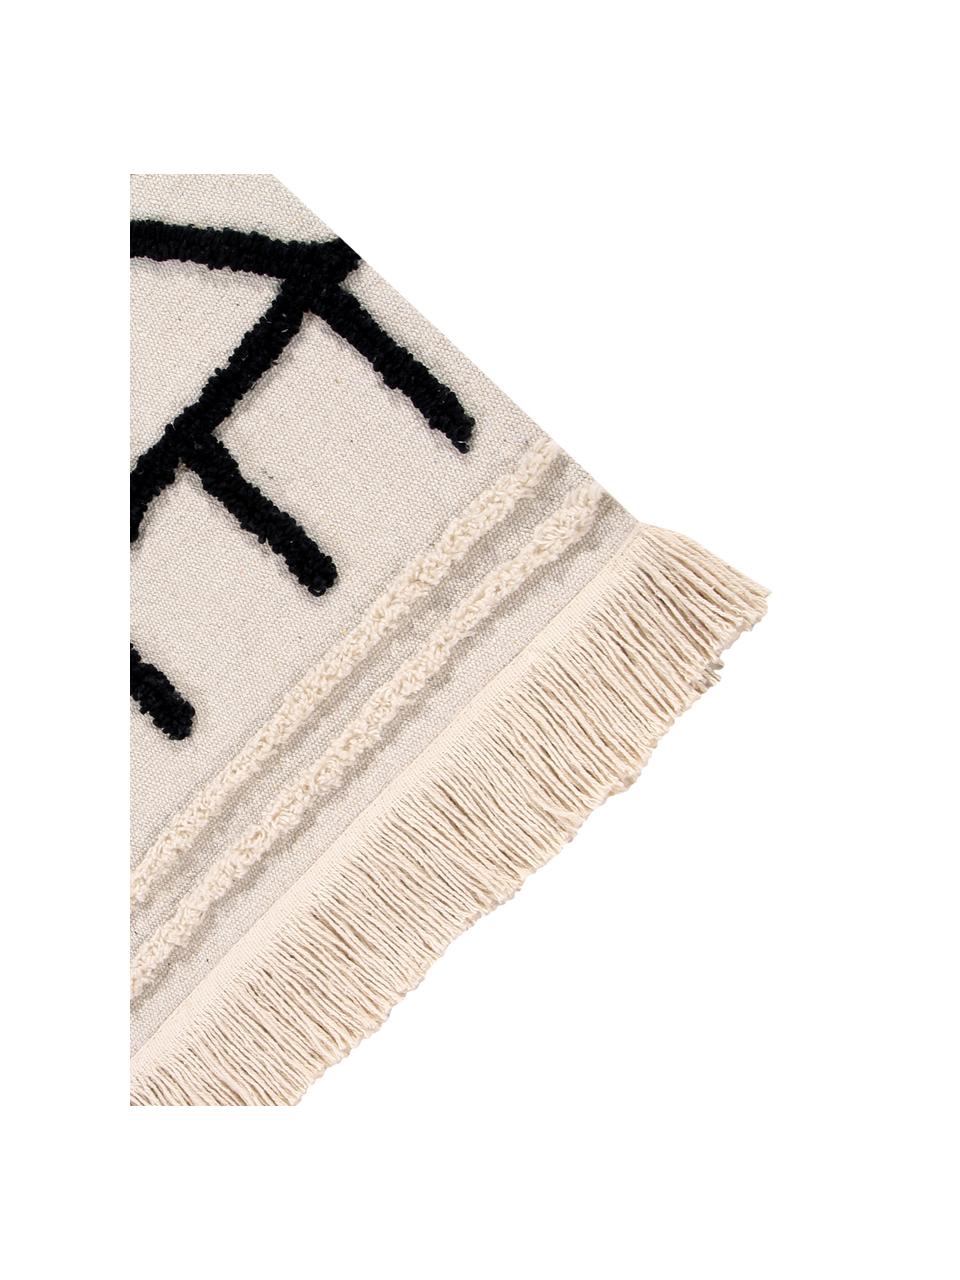 Tappeto in cotone lavabile Berber, Retro: cotone riciclato, Marrone chiaro, nero, Larg.170 x Lung. 240 cm  (taglia M)